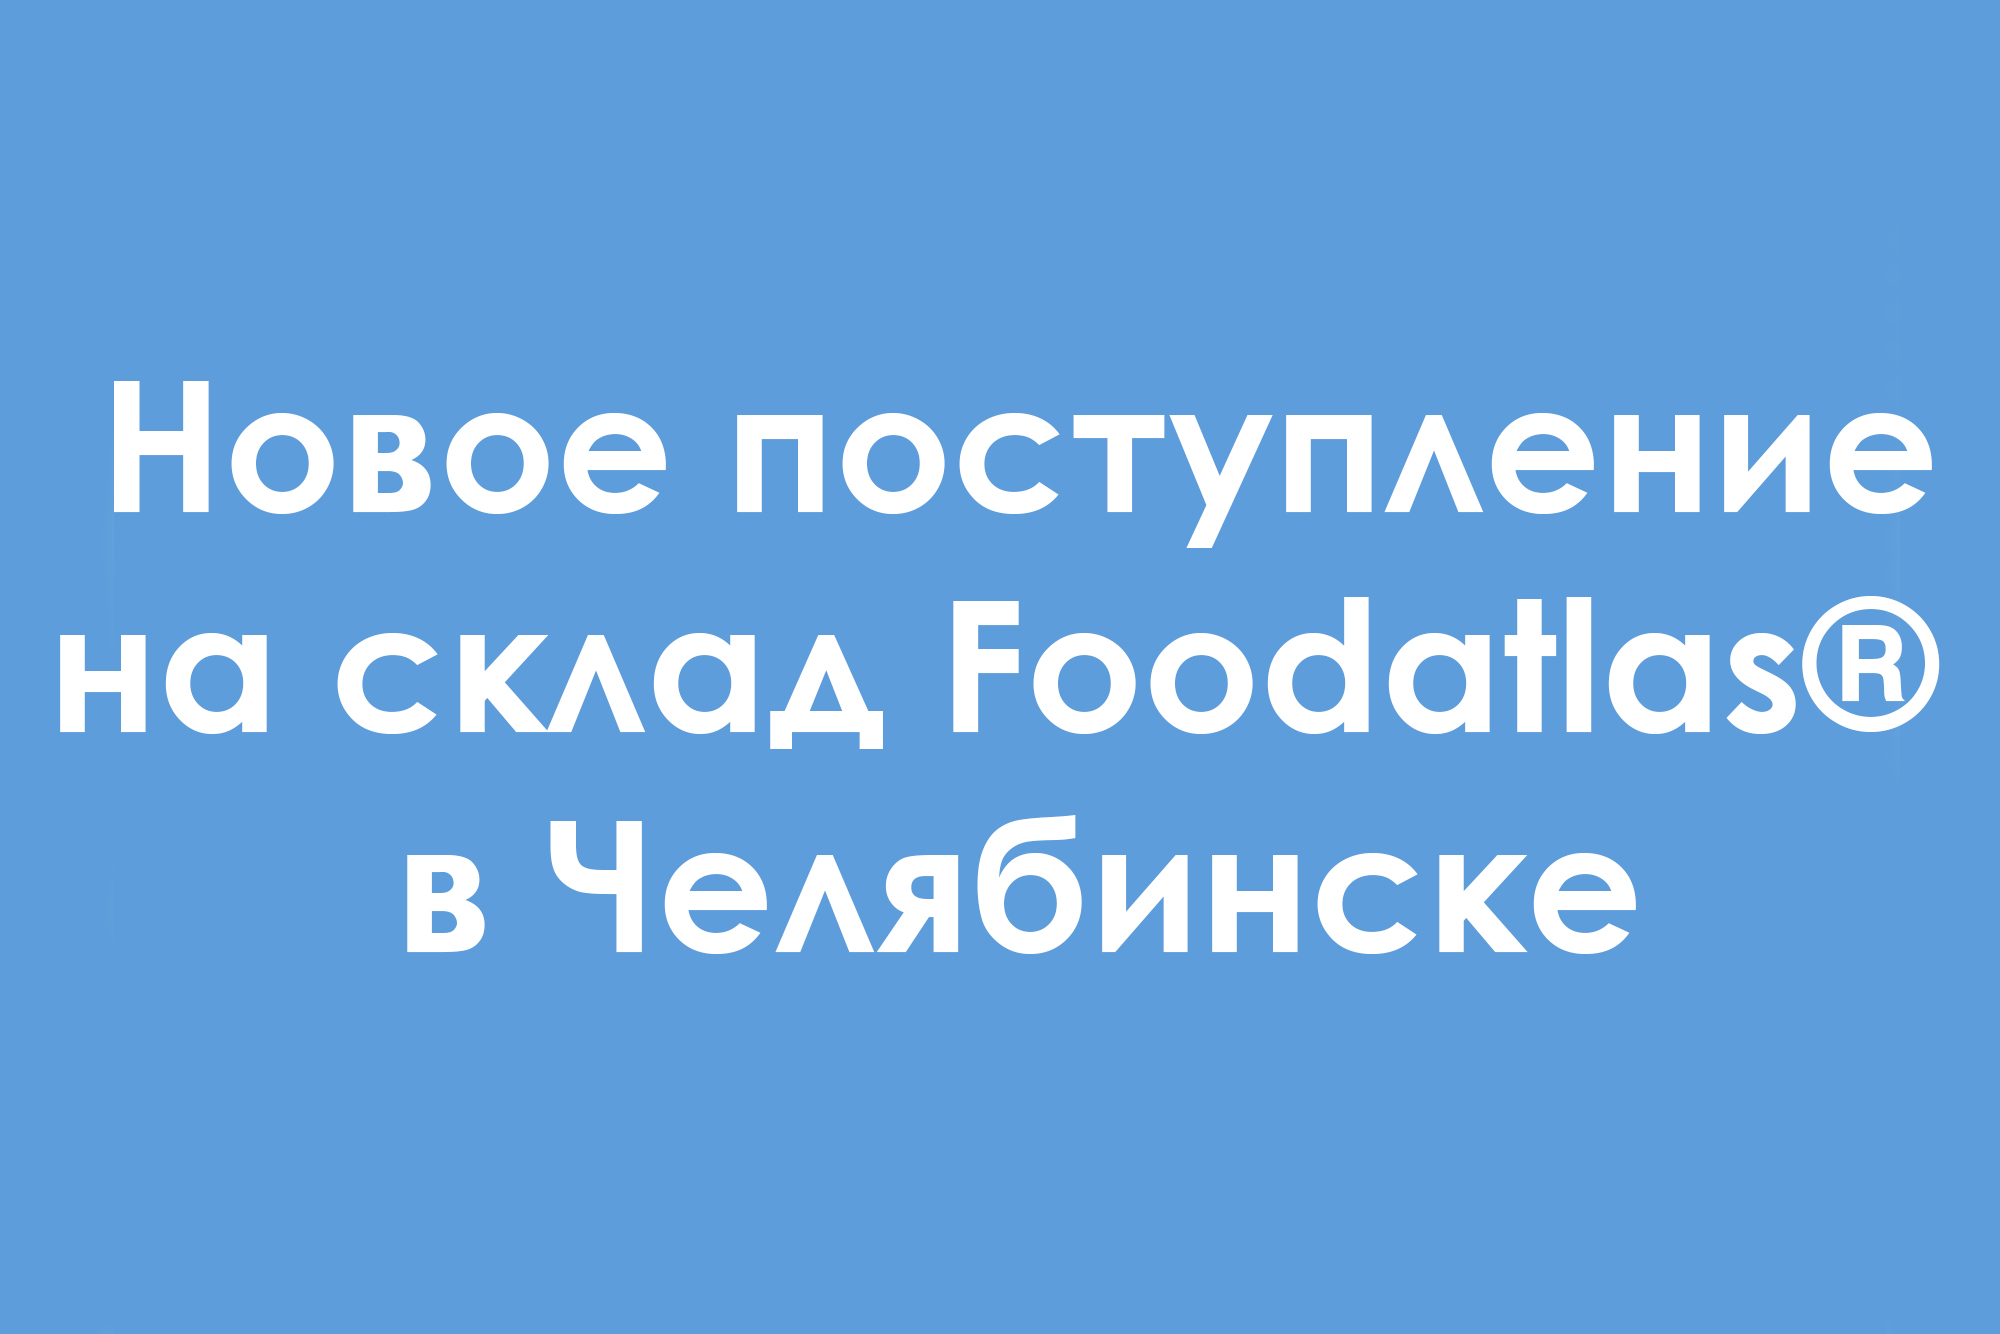 Поступление запчастей для упаковочного оборудования и сырья на склад Foodatlas® в Челябинске